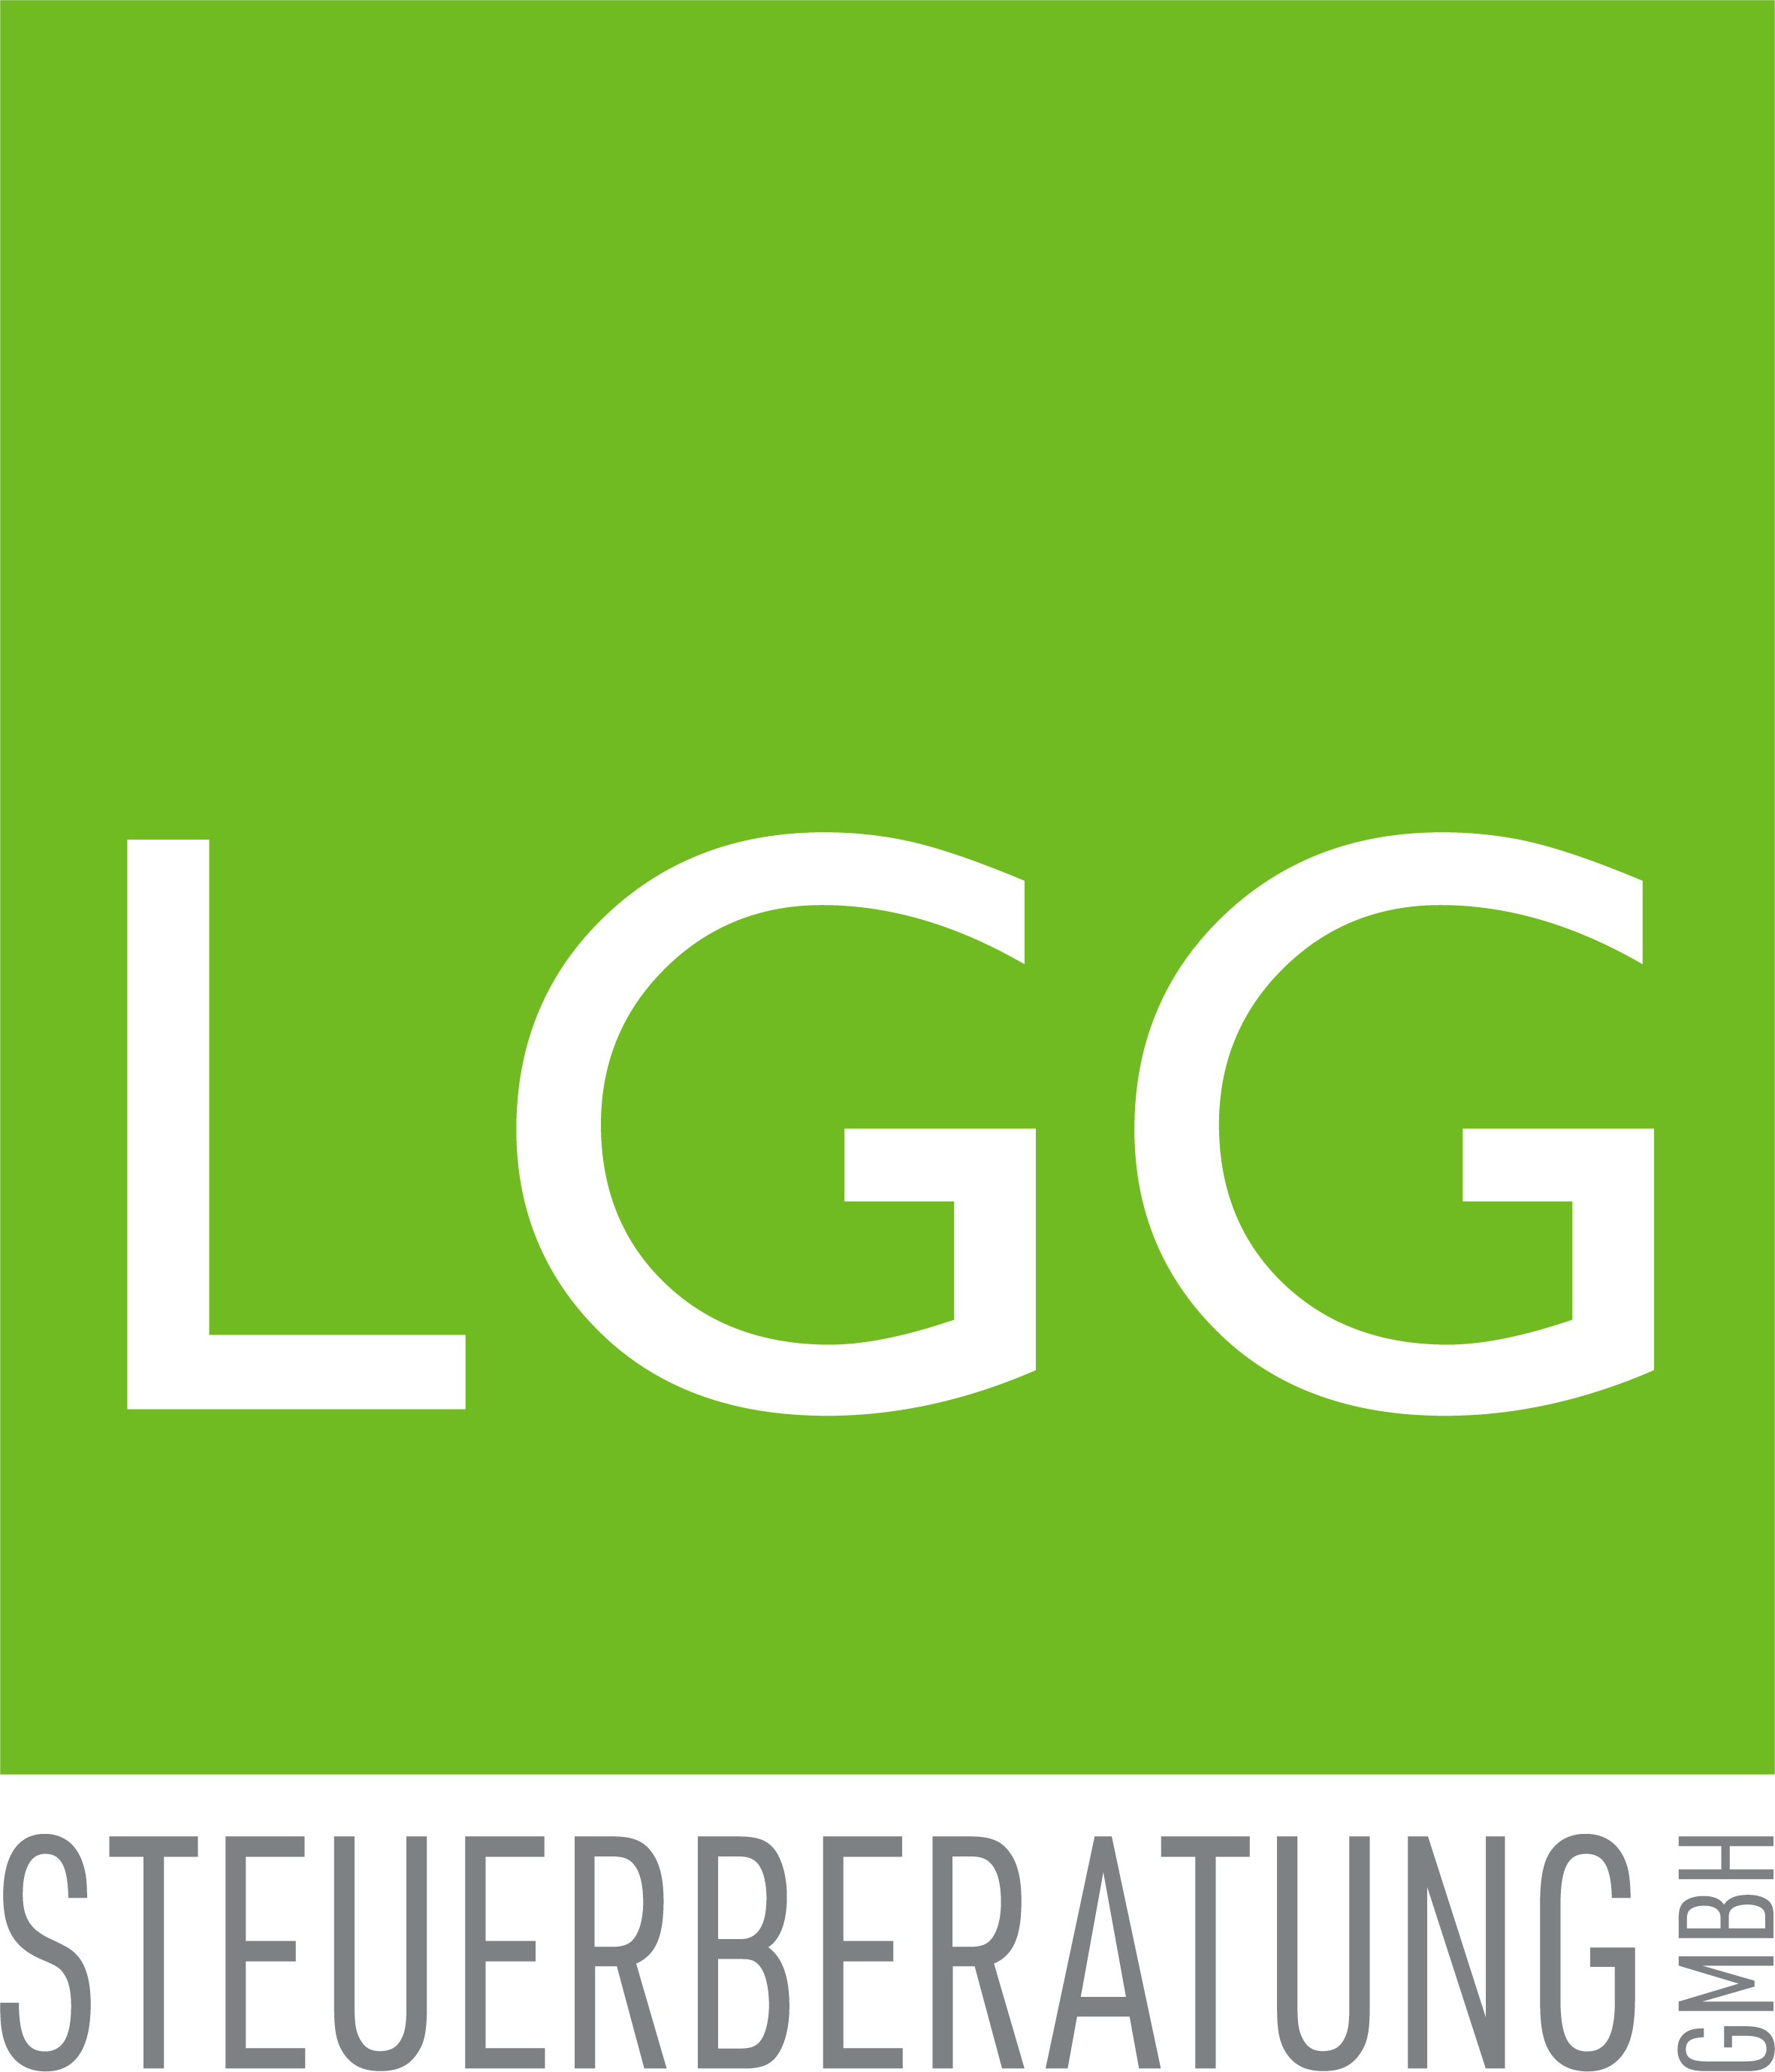 00a_Pfade_Logo_LGG_dnklgrau_final